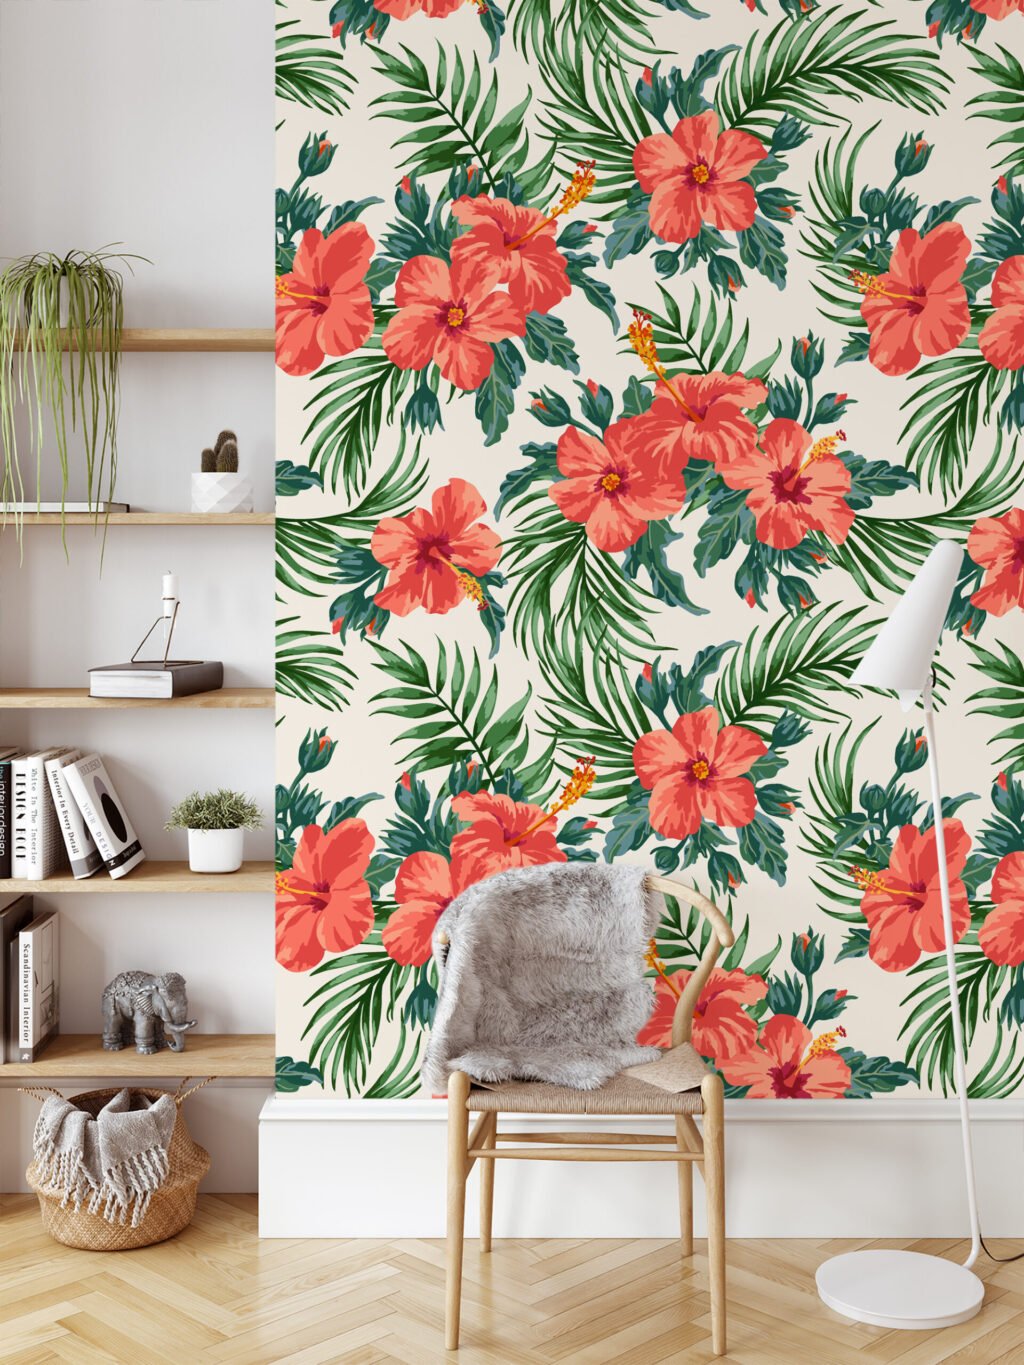 Şeftali Pembe Çiçek ve Yaprak Desenli Duvar Kağıdı Tasarımı, Yemyeşil Tropik Duvar Posteri Çiçekli Duvar Kağıtları 6